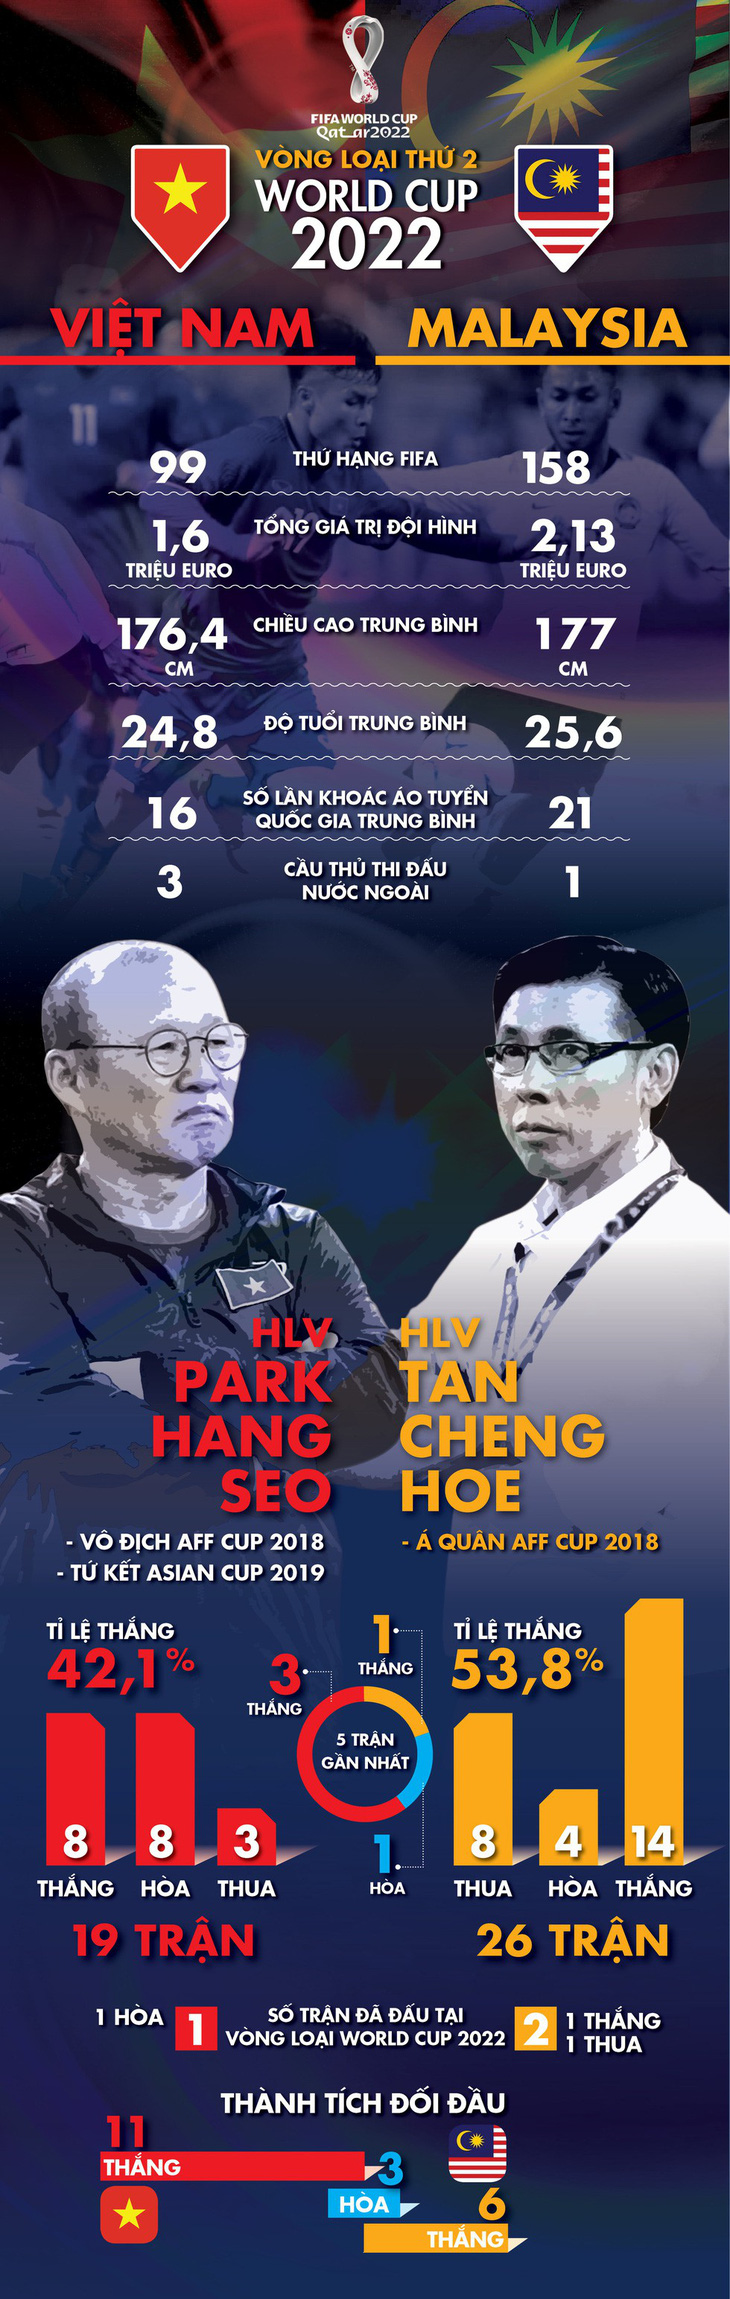 Tối nay 10-10, tuyển Việt Nam đánh bại Malaysia cách nào? - Ảnh 1.